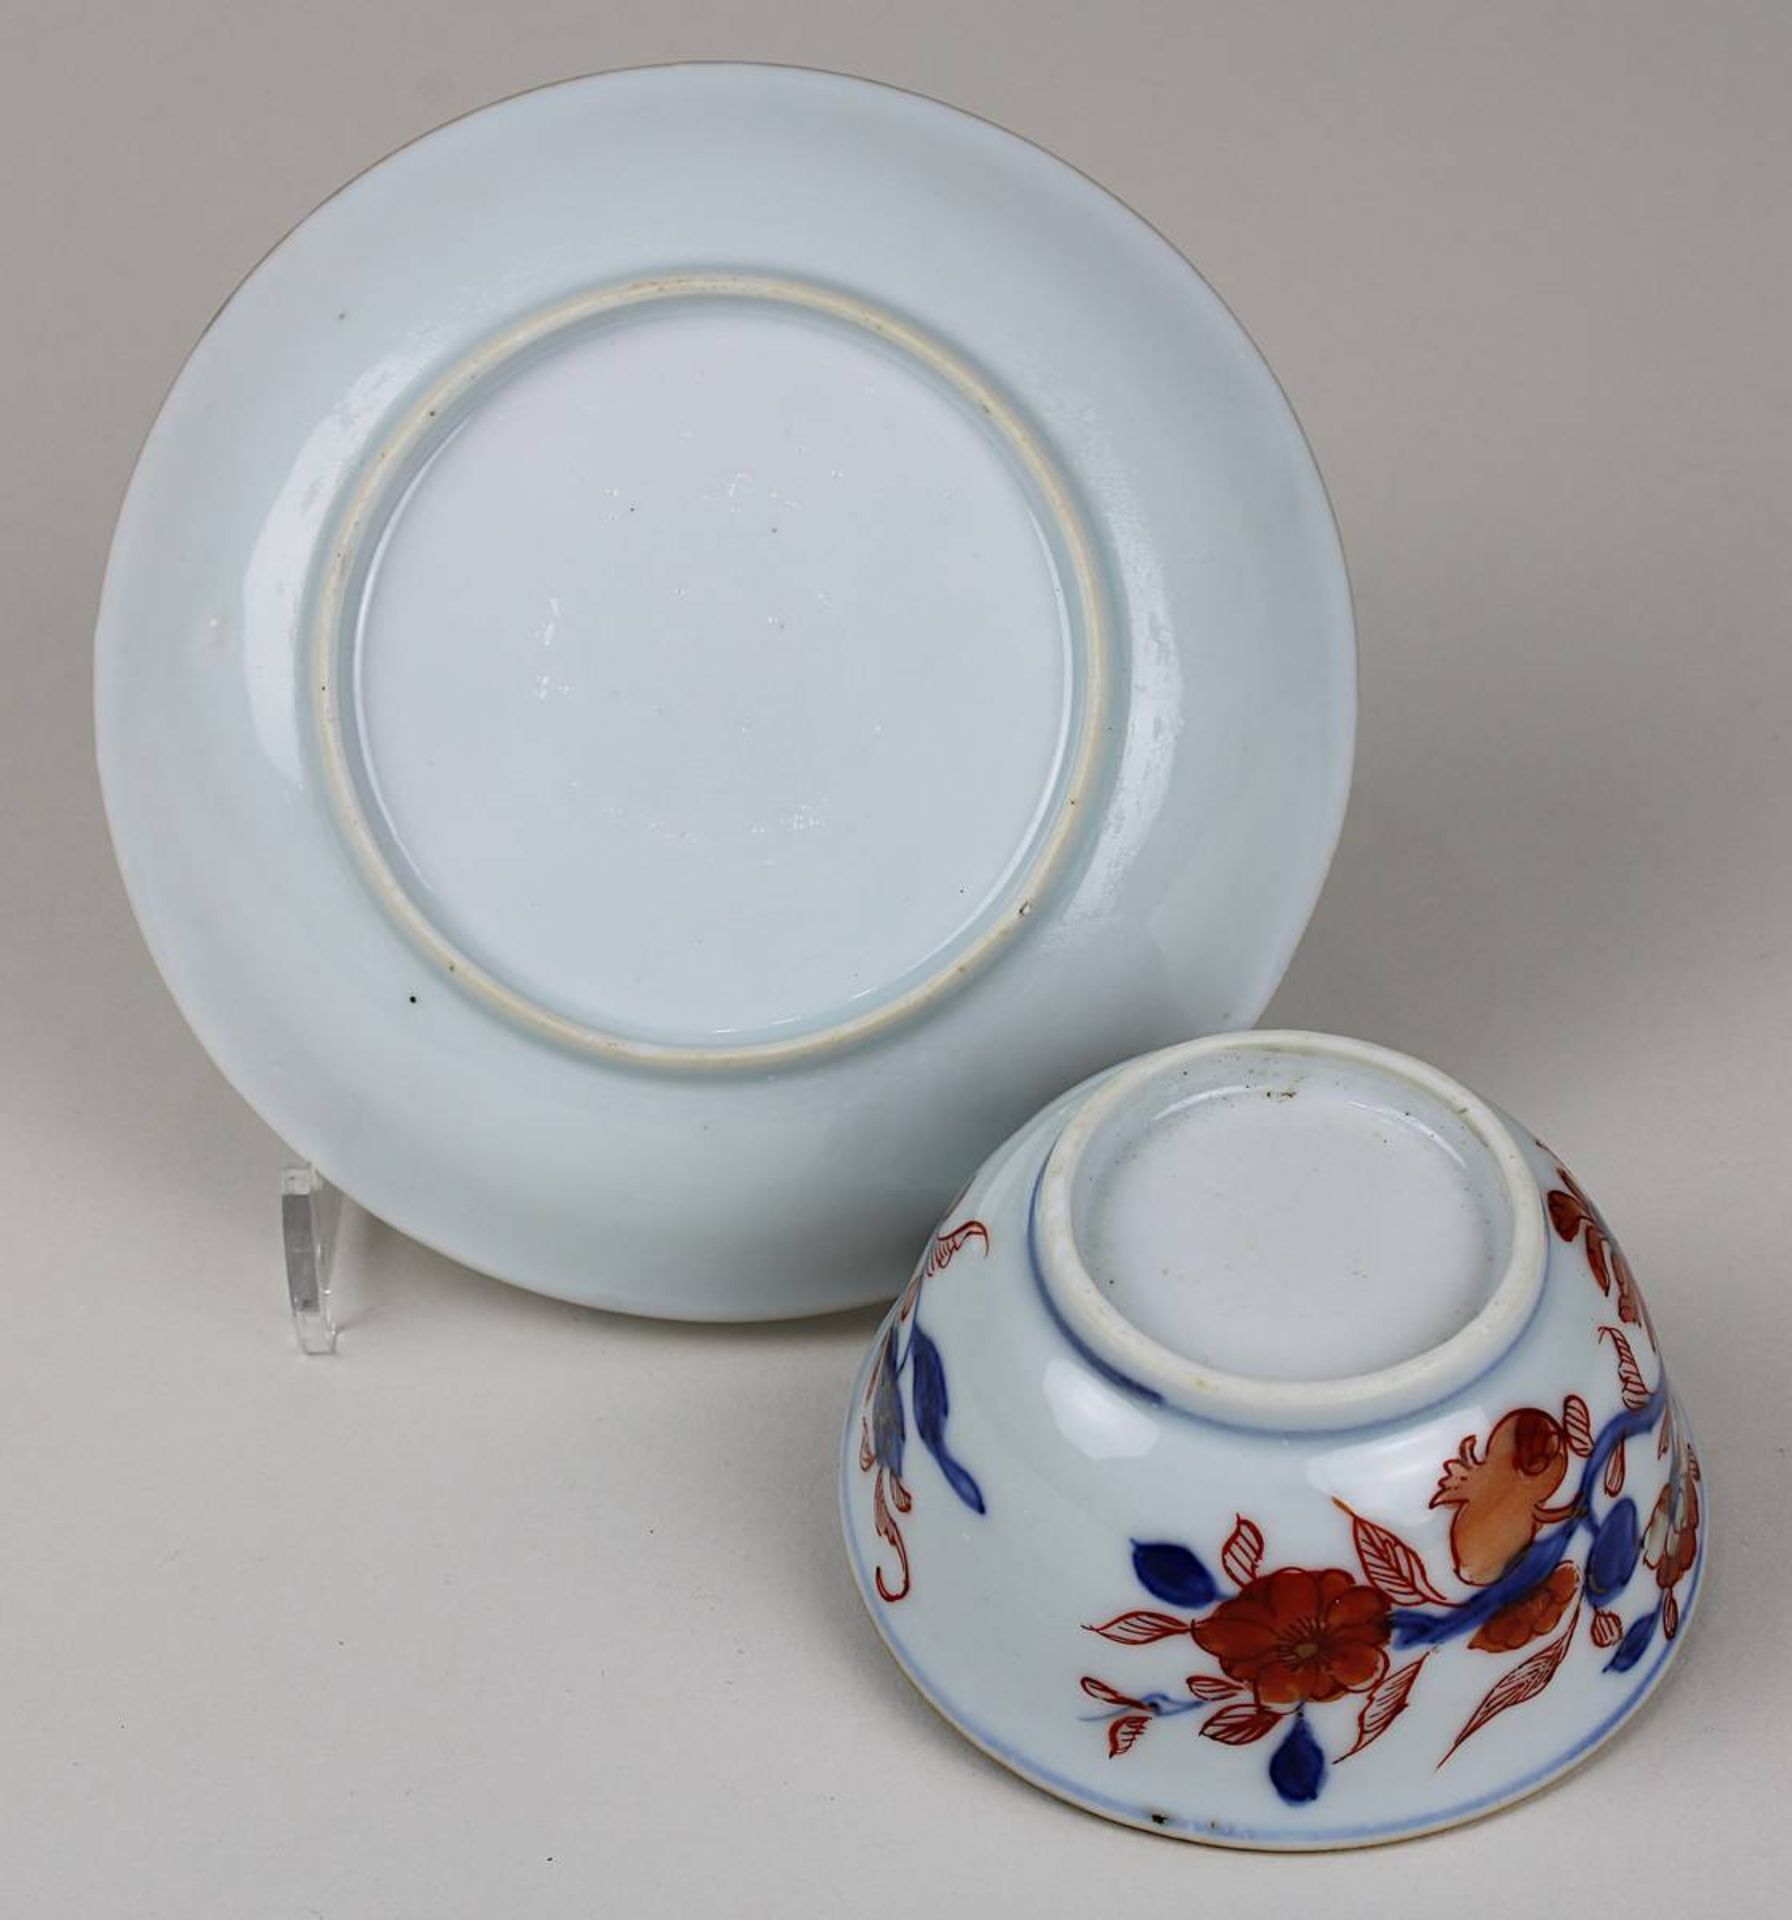 Porzellankoppchen mit Unterteller, China 18. Jh., weißer Scherben, florale rot-blaue Ducai- - Bild 2 aus 2